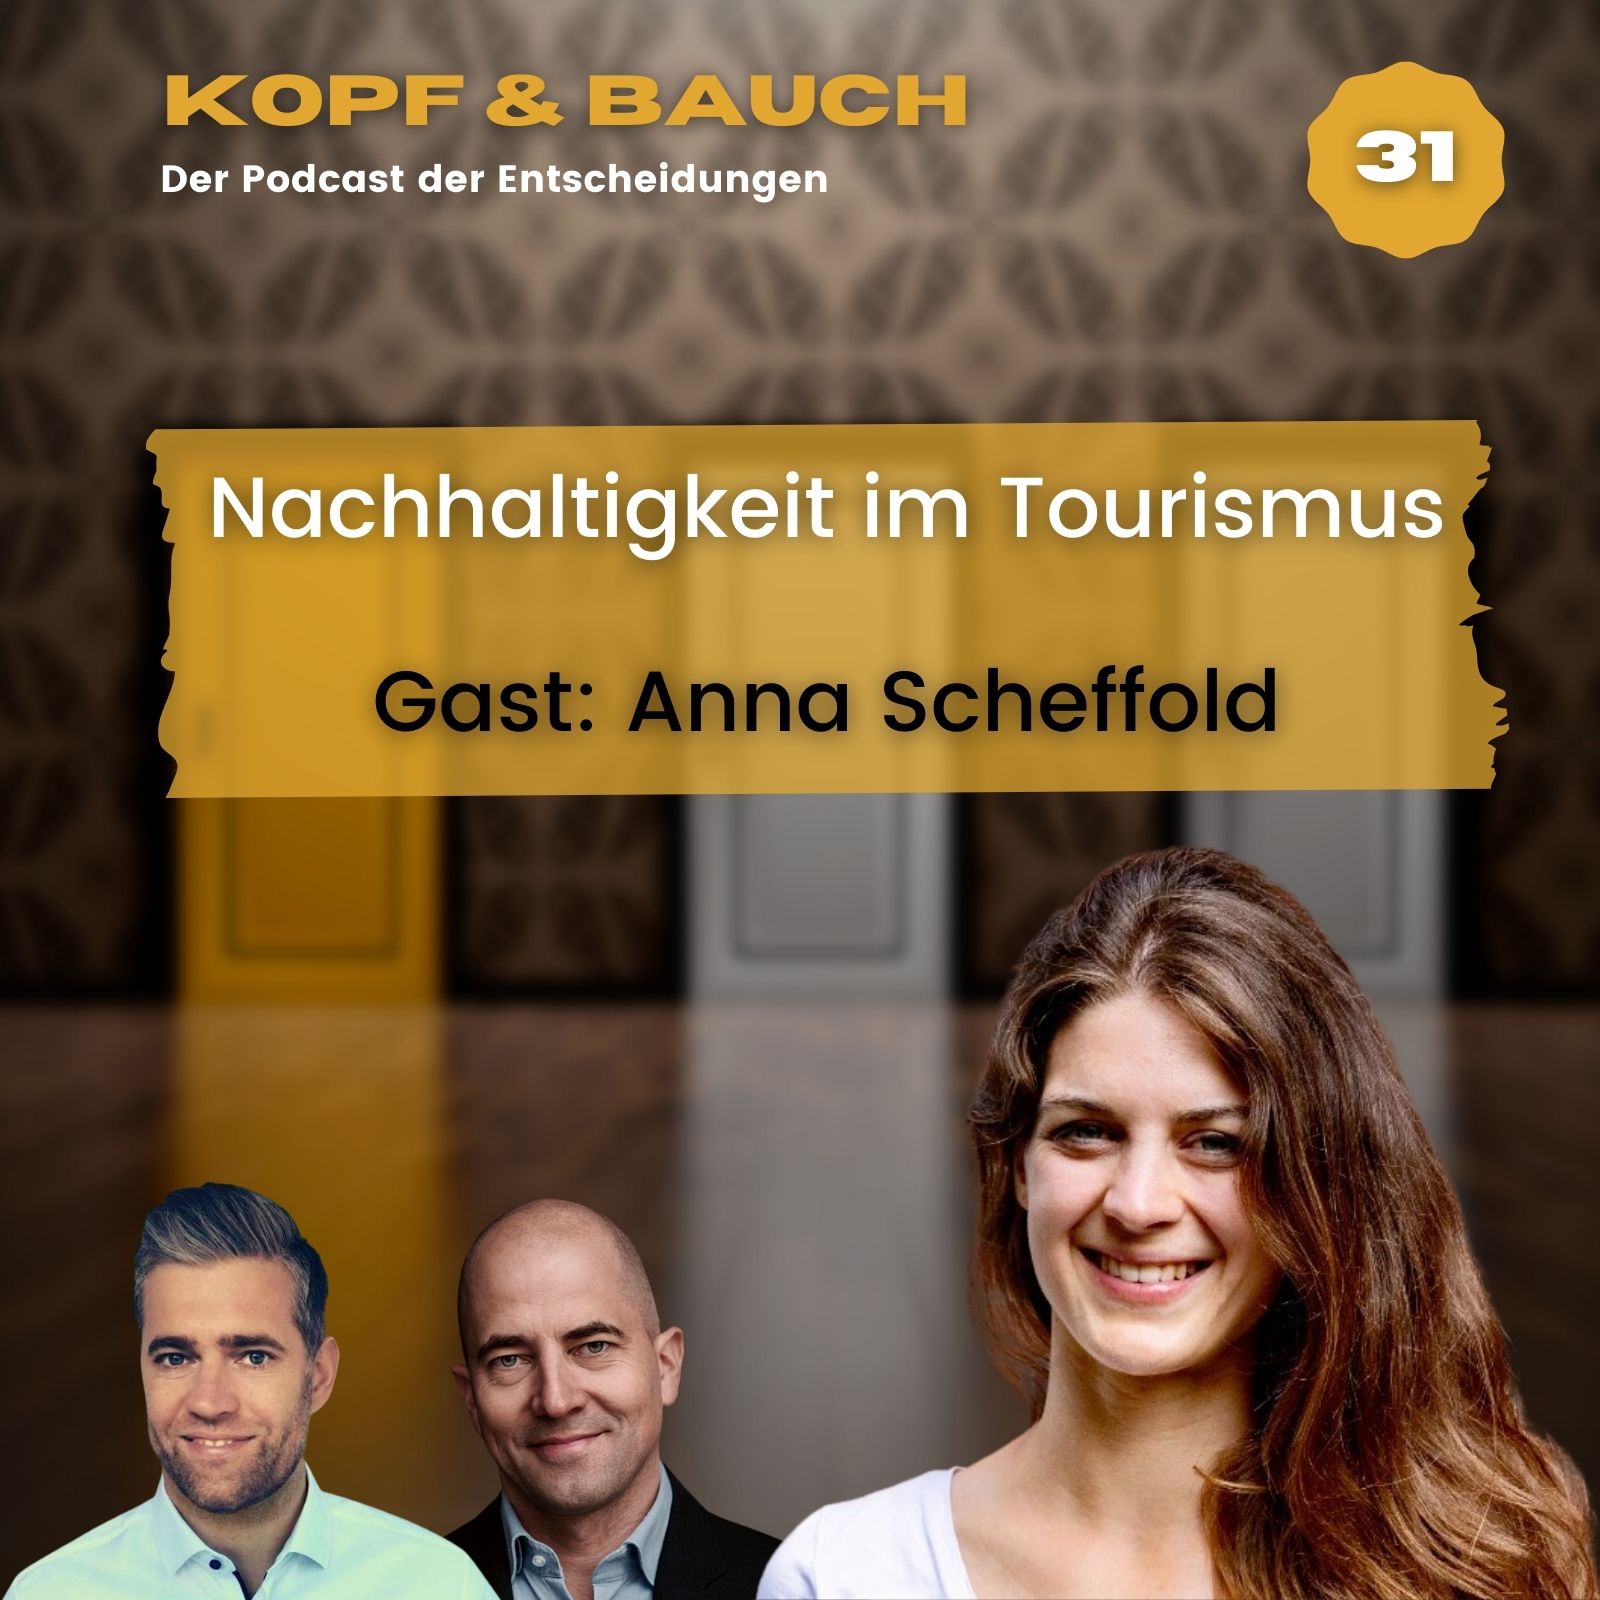 Nachhaltigkeit im Tourismus  - Gast: Anna Scheffold